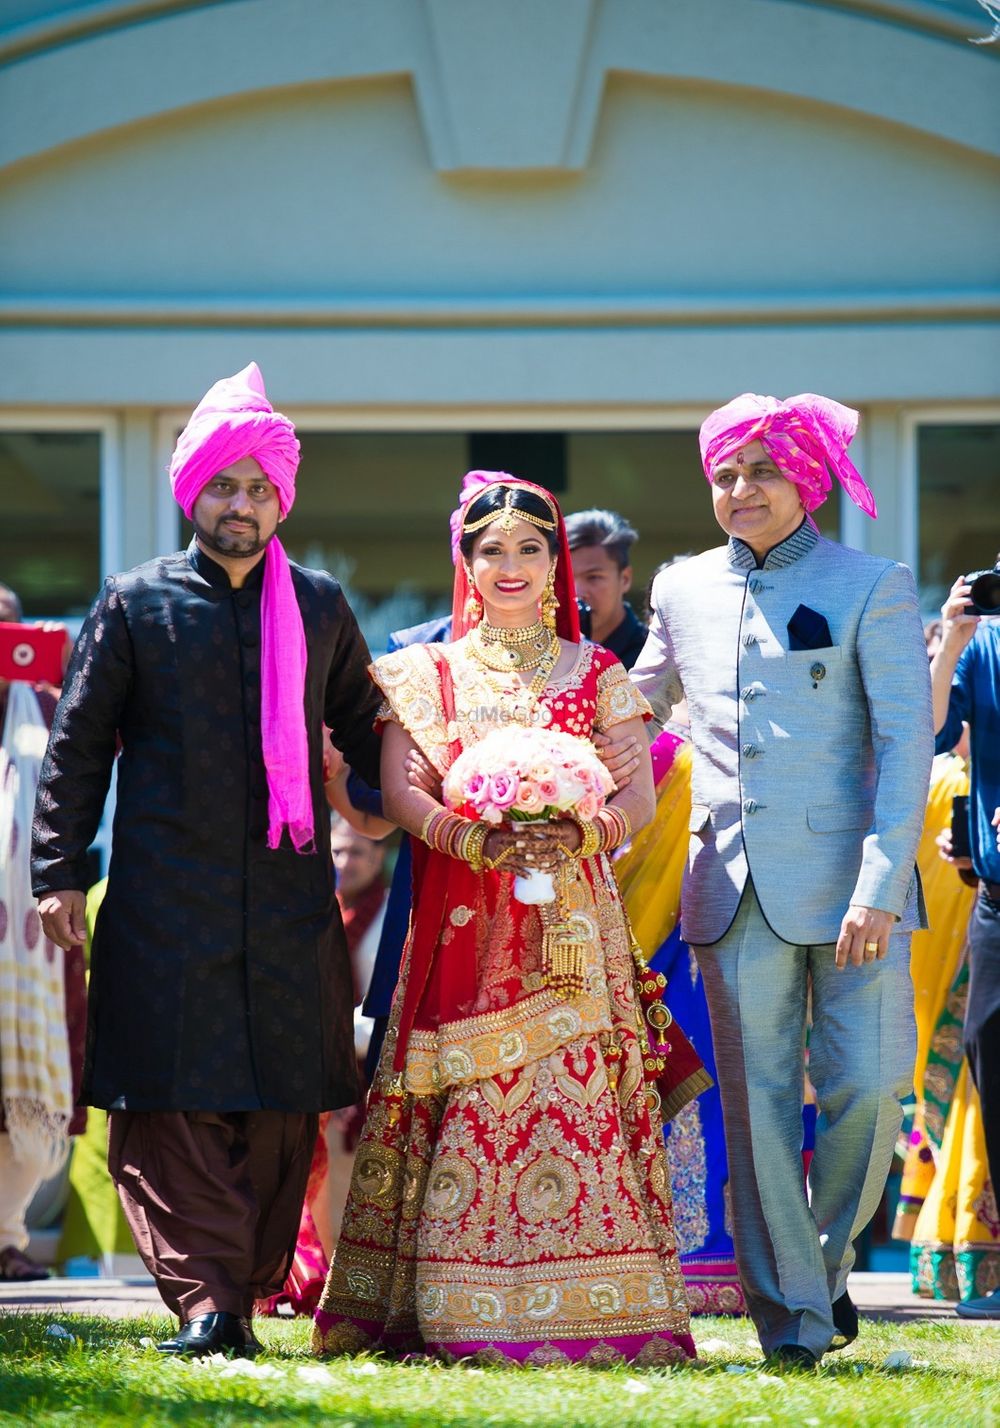 Photo From Kunal & Pooja - By Amaraay Weddings